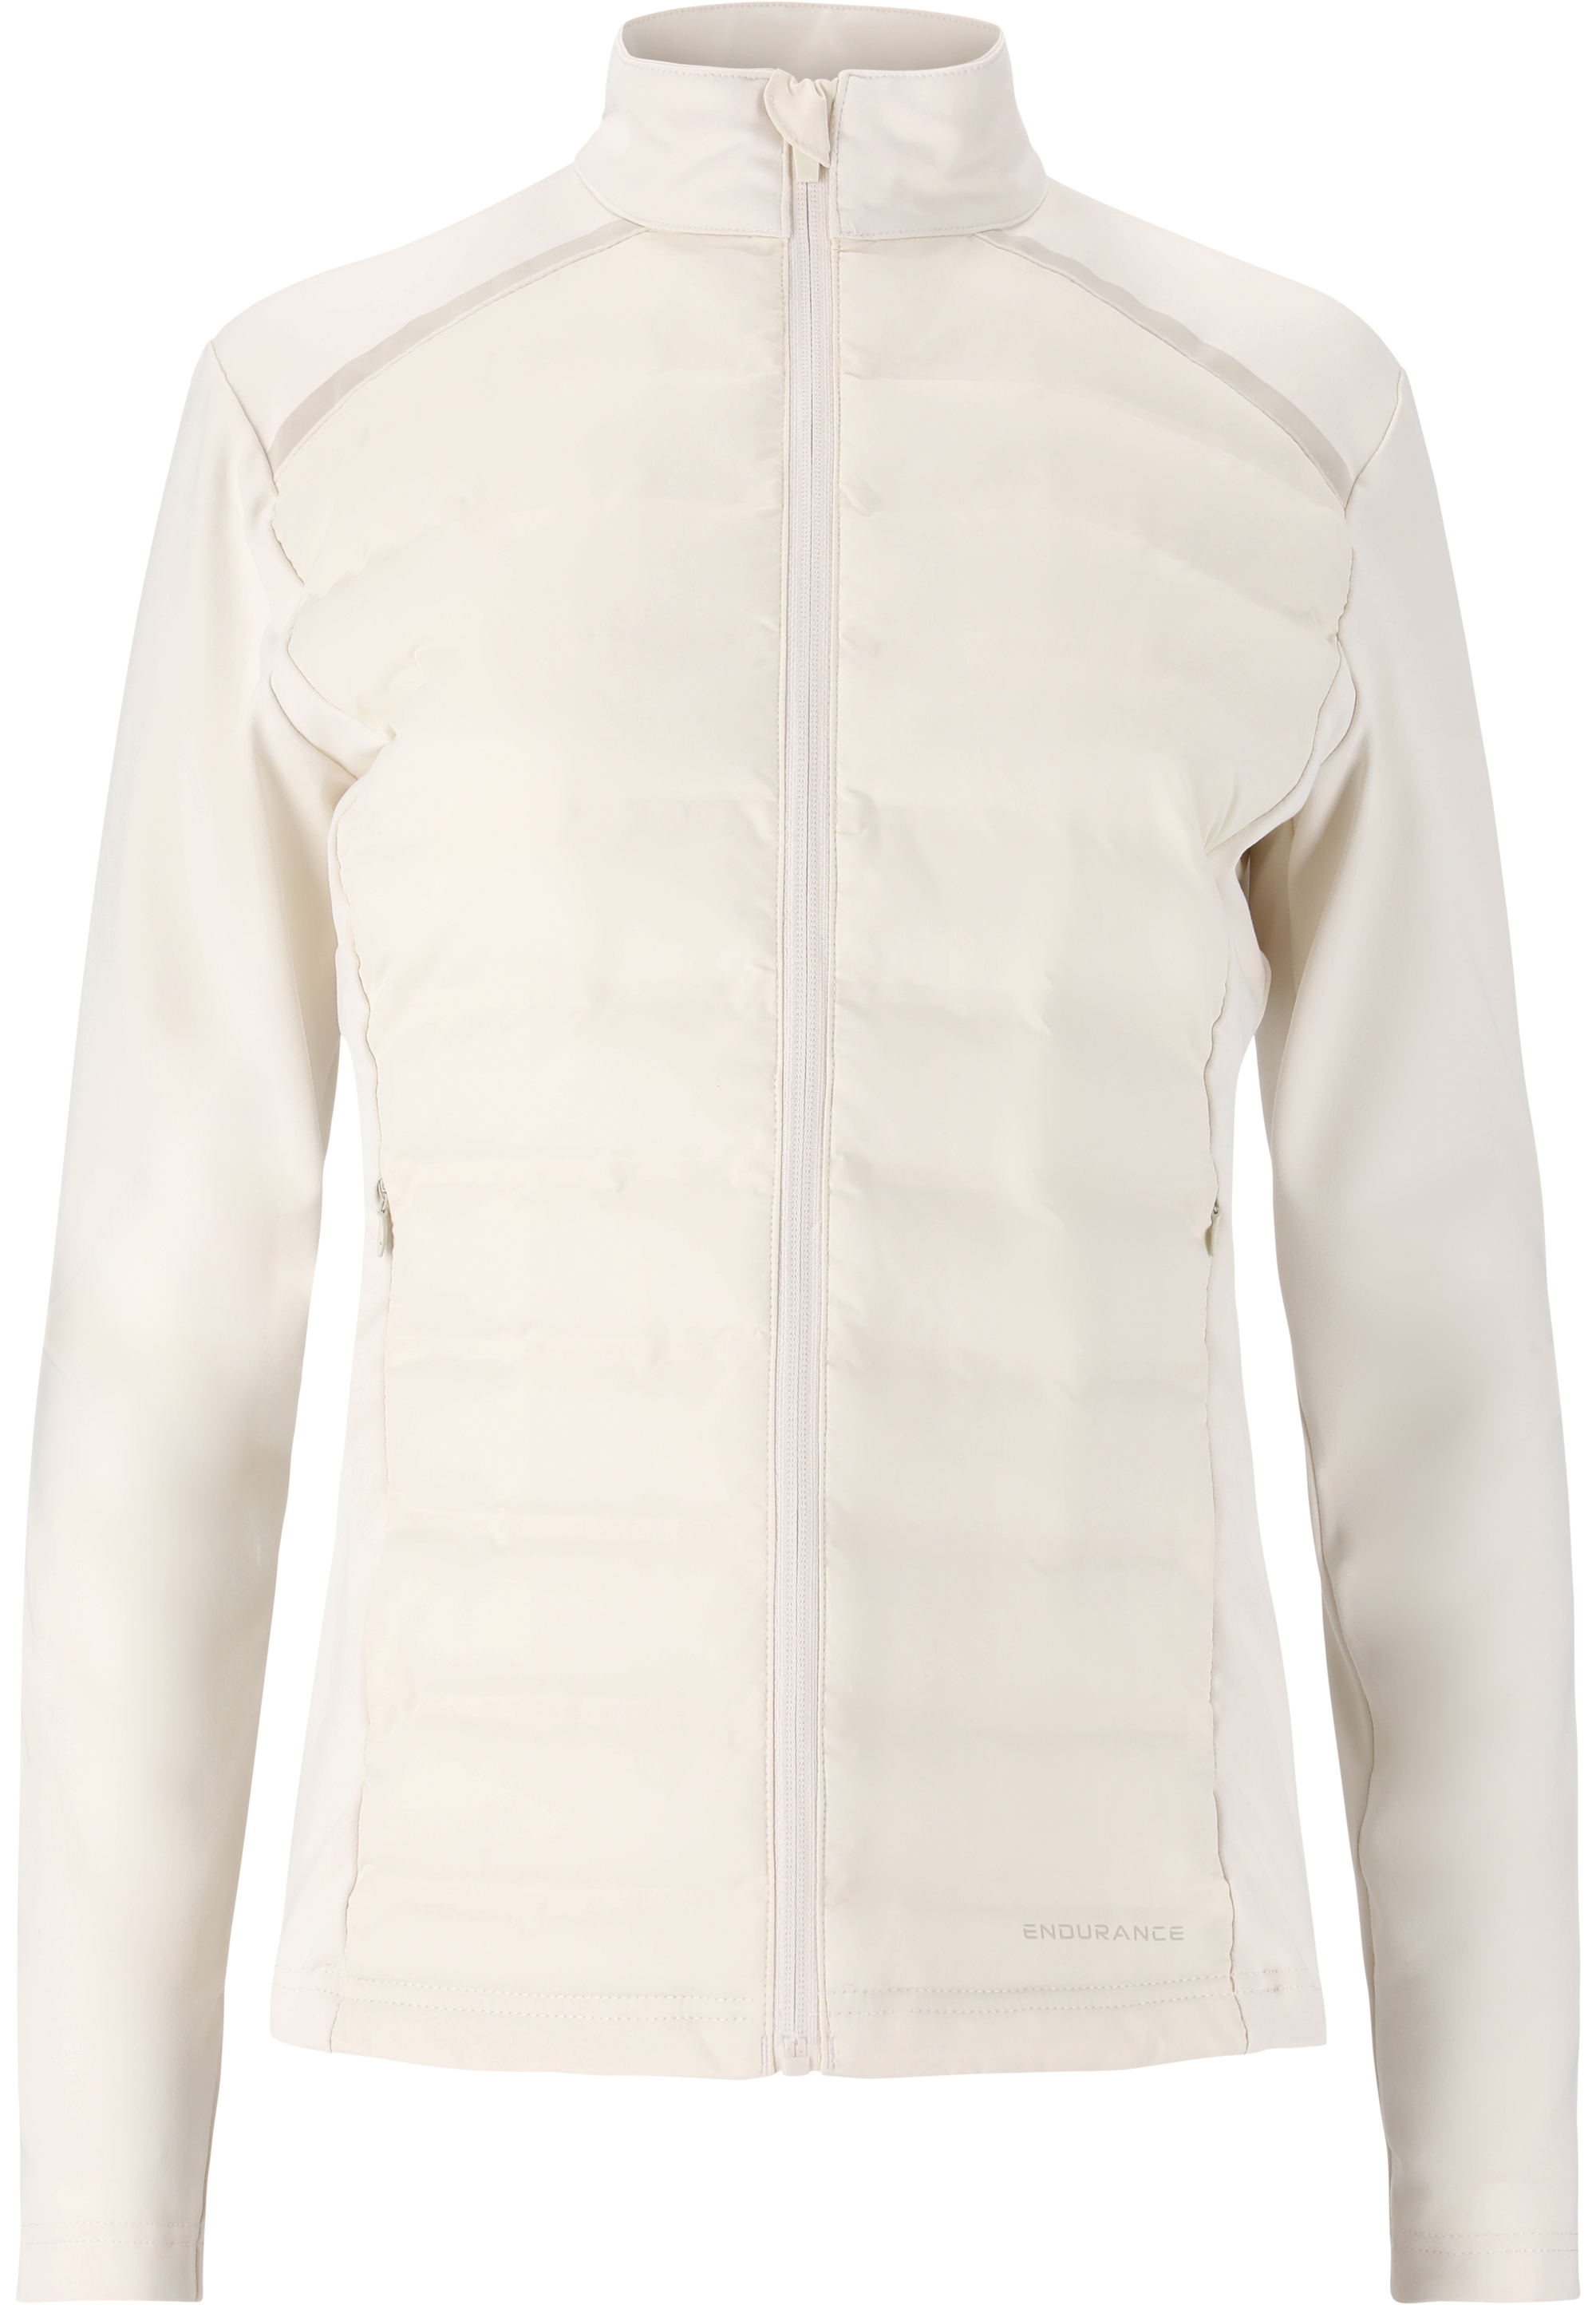 Спортивная куртка Endurance Reitta, цвет 1145 Whisper White